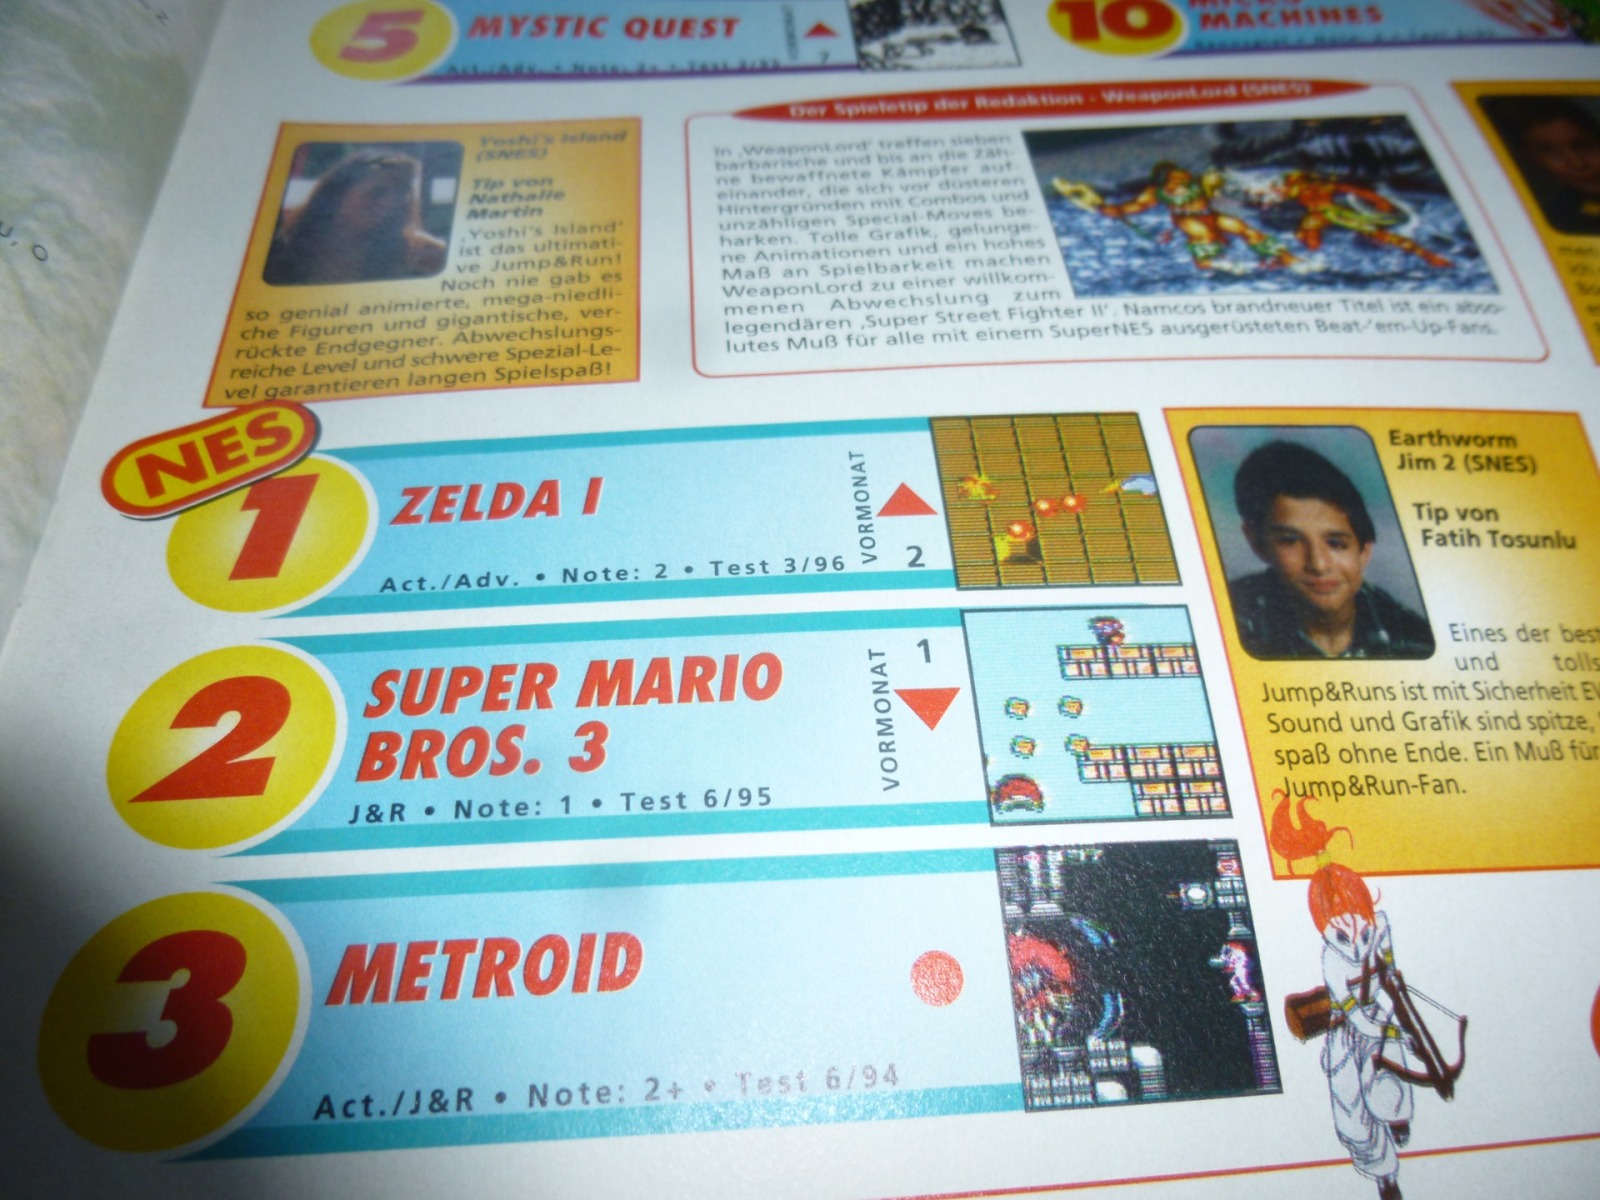 TOTAL Das unabhängige Magazin - 100% Nintendo - Ausgabe 3/96 1996 19